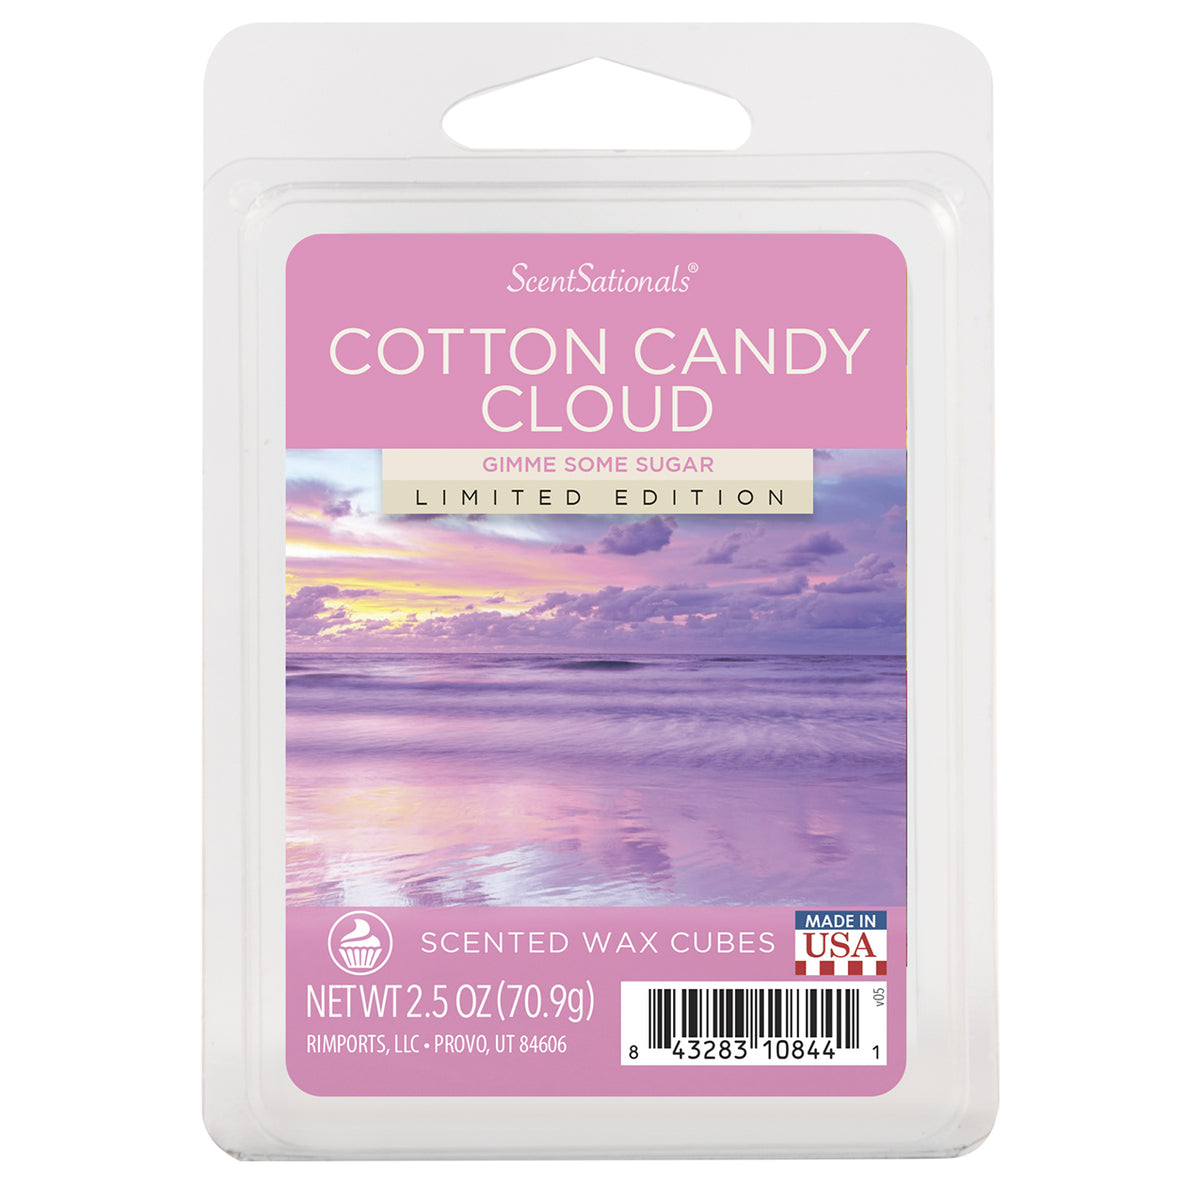 Cotton Candy Cloud